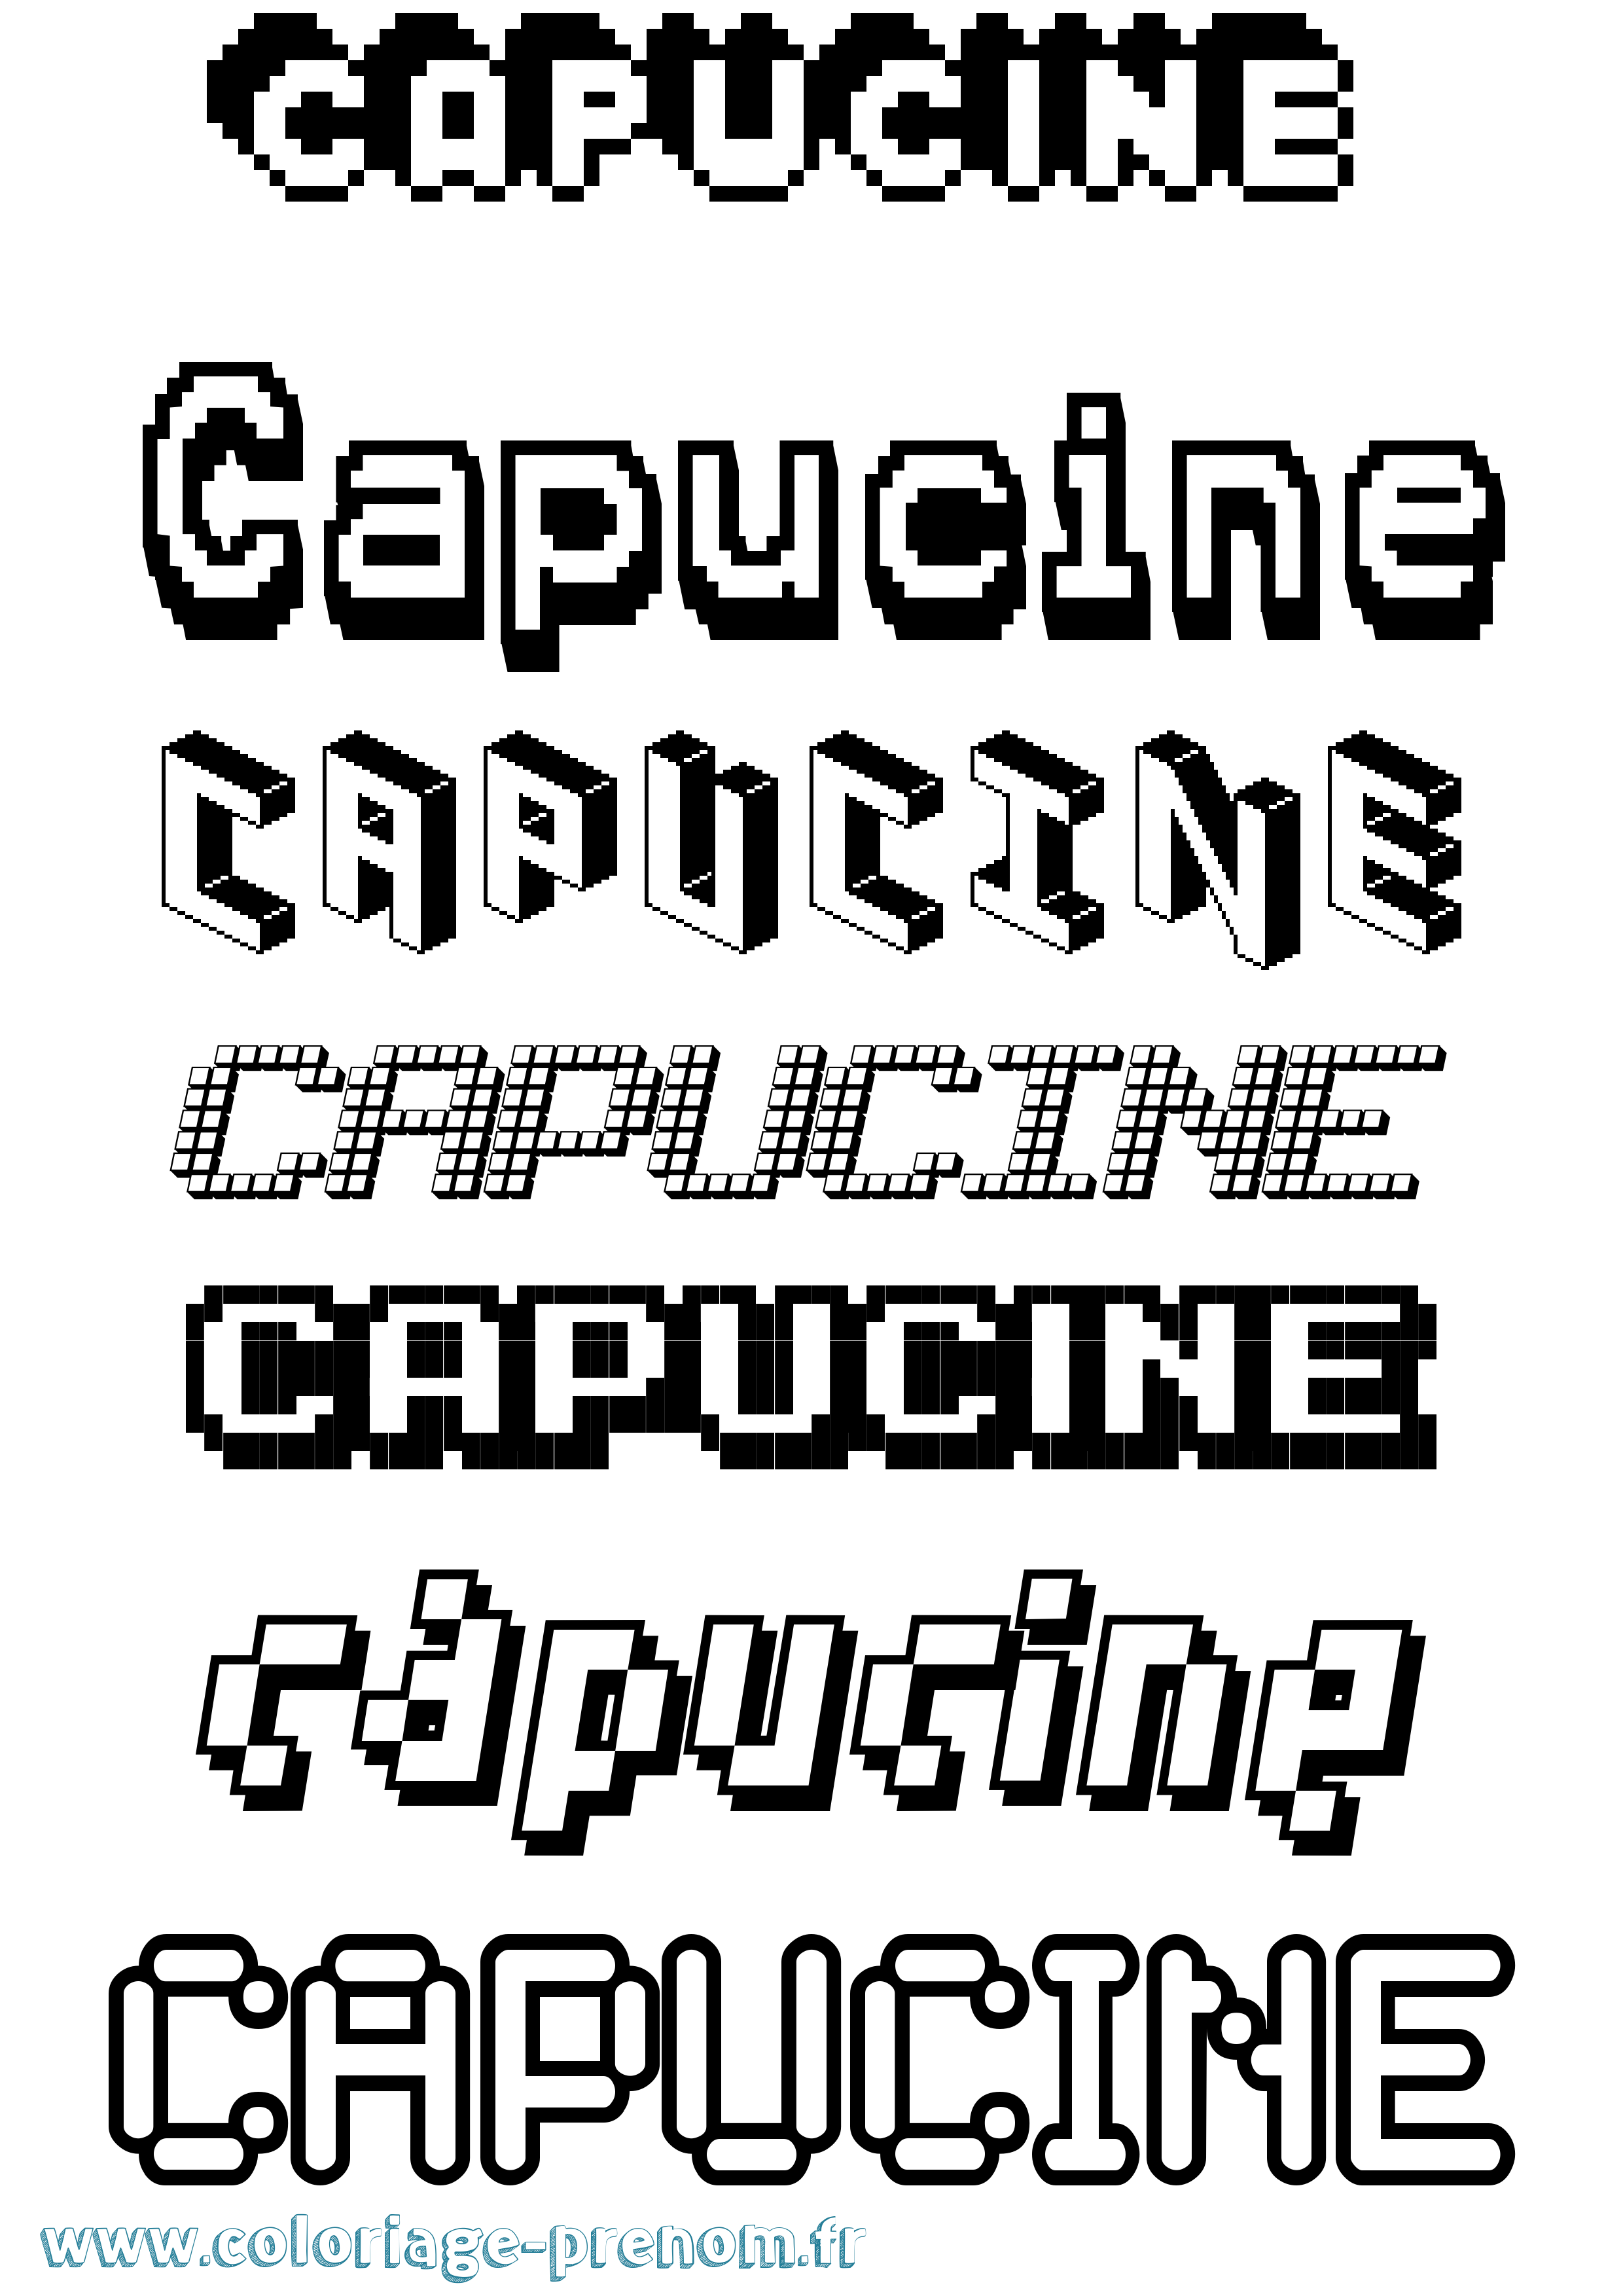 Coloriage prénom Capucine Pixel